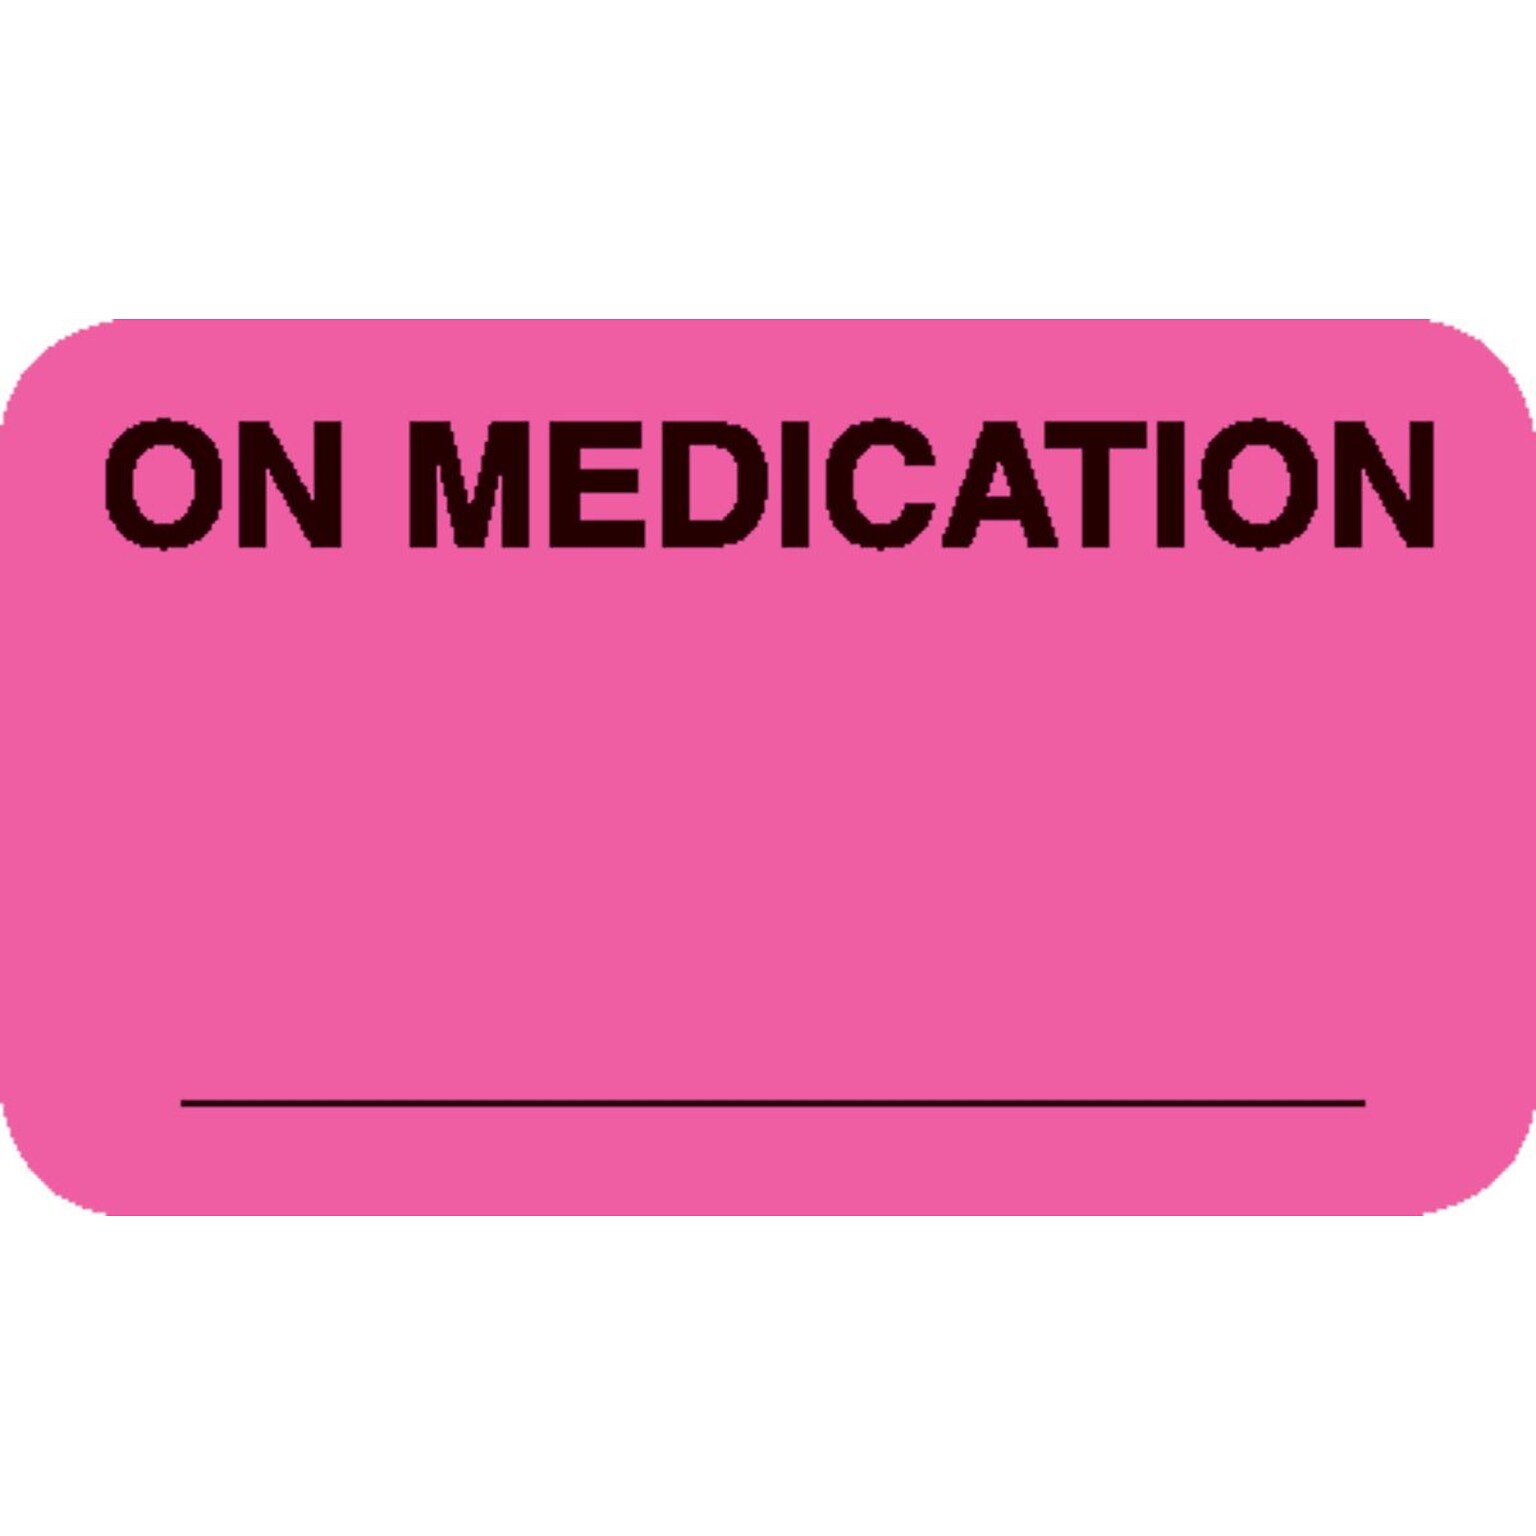 Medical Arts Press® Diet and Medical Alert Medical Labels, On Medication, Fluorescent Pink, 7/8x1-1/2, 500 Labels